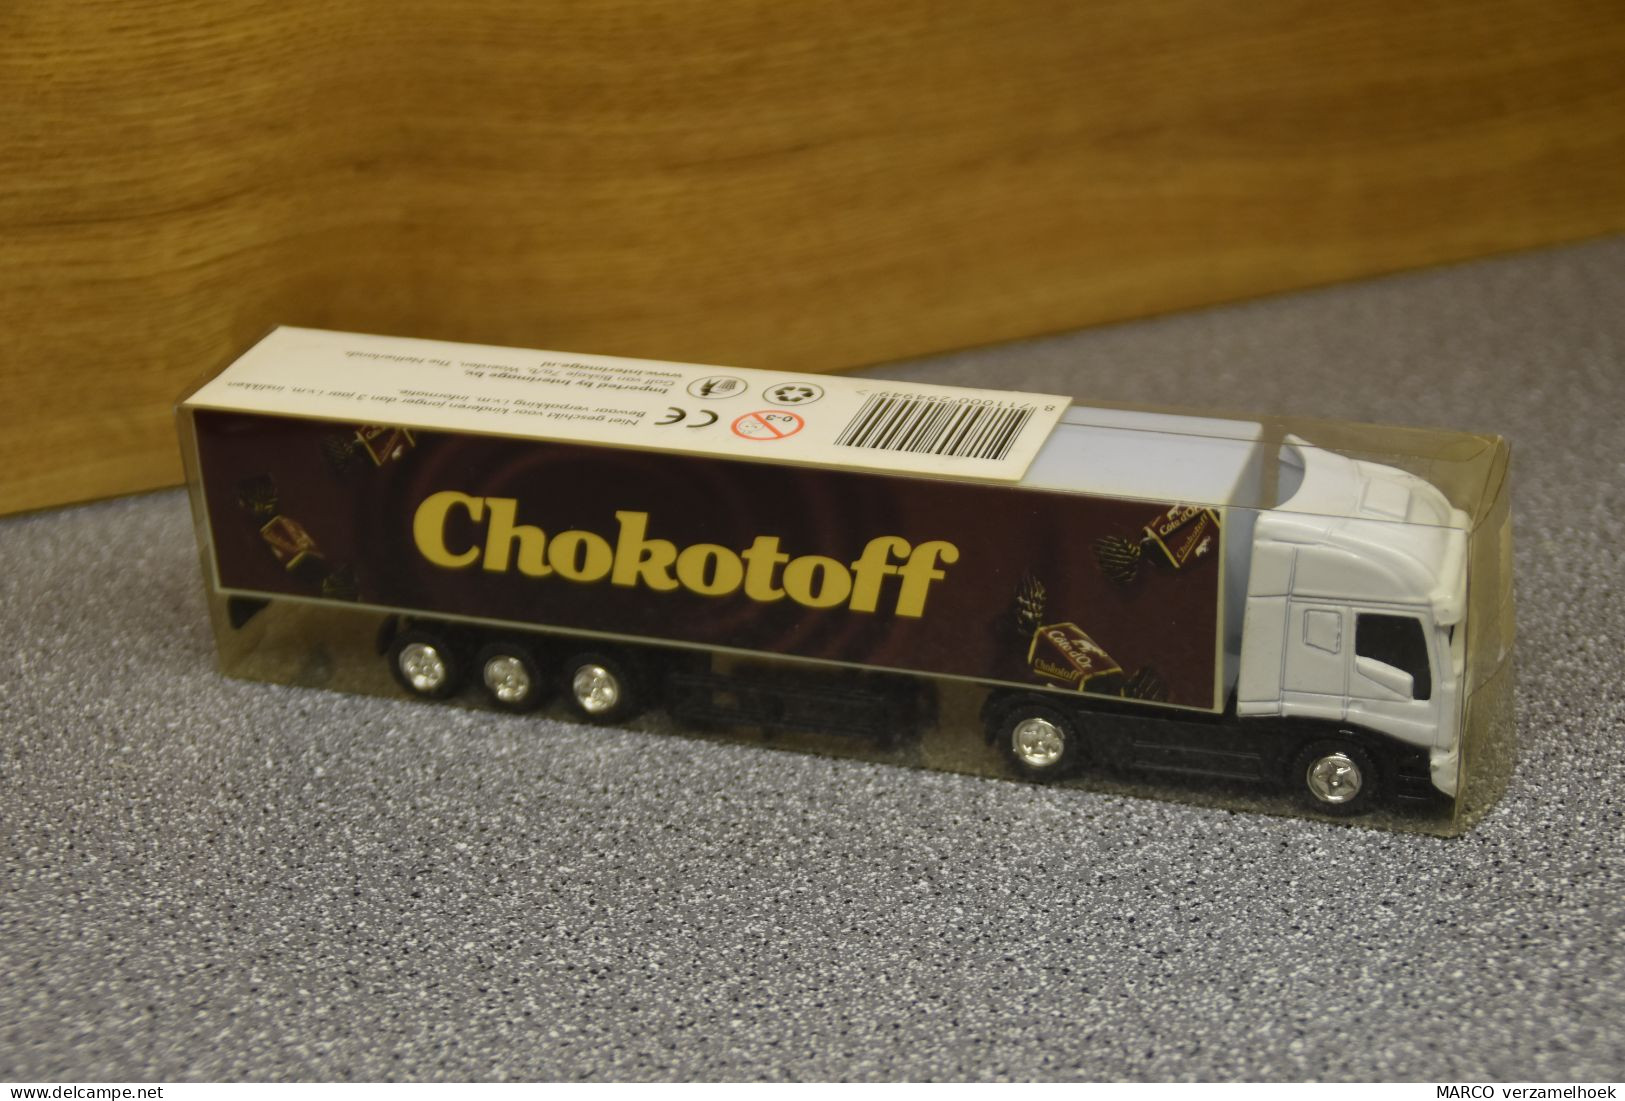 Vrachtwagen-truck Interimage Woerden (NL) Scale 1:87 Chokotoff - Massstab 1:87